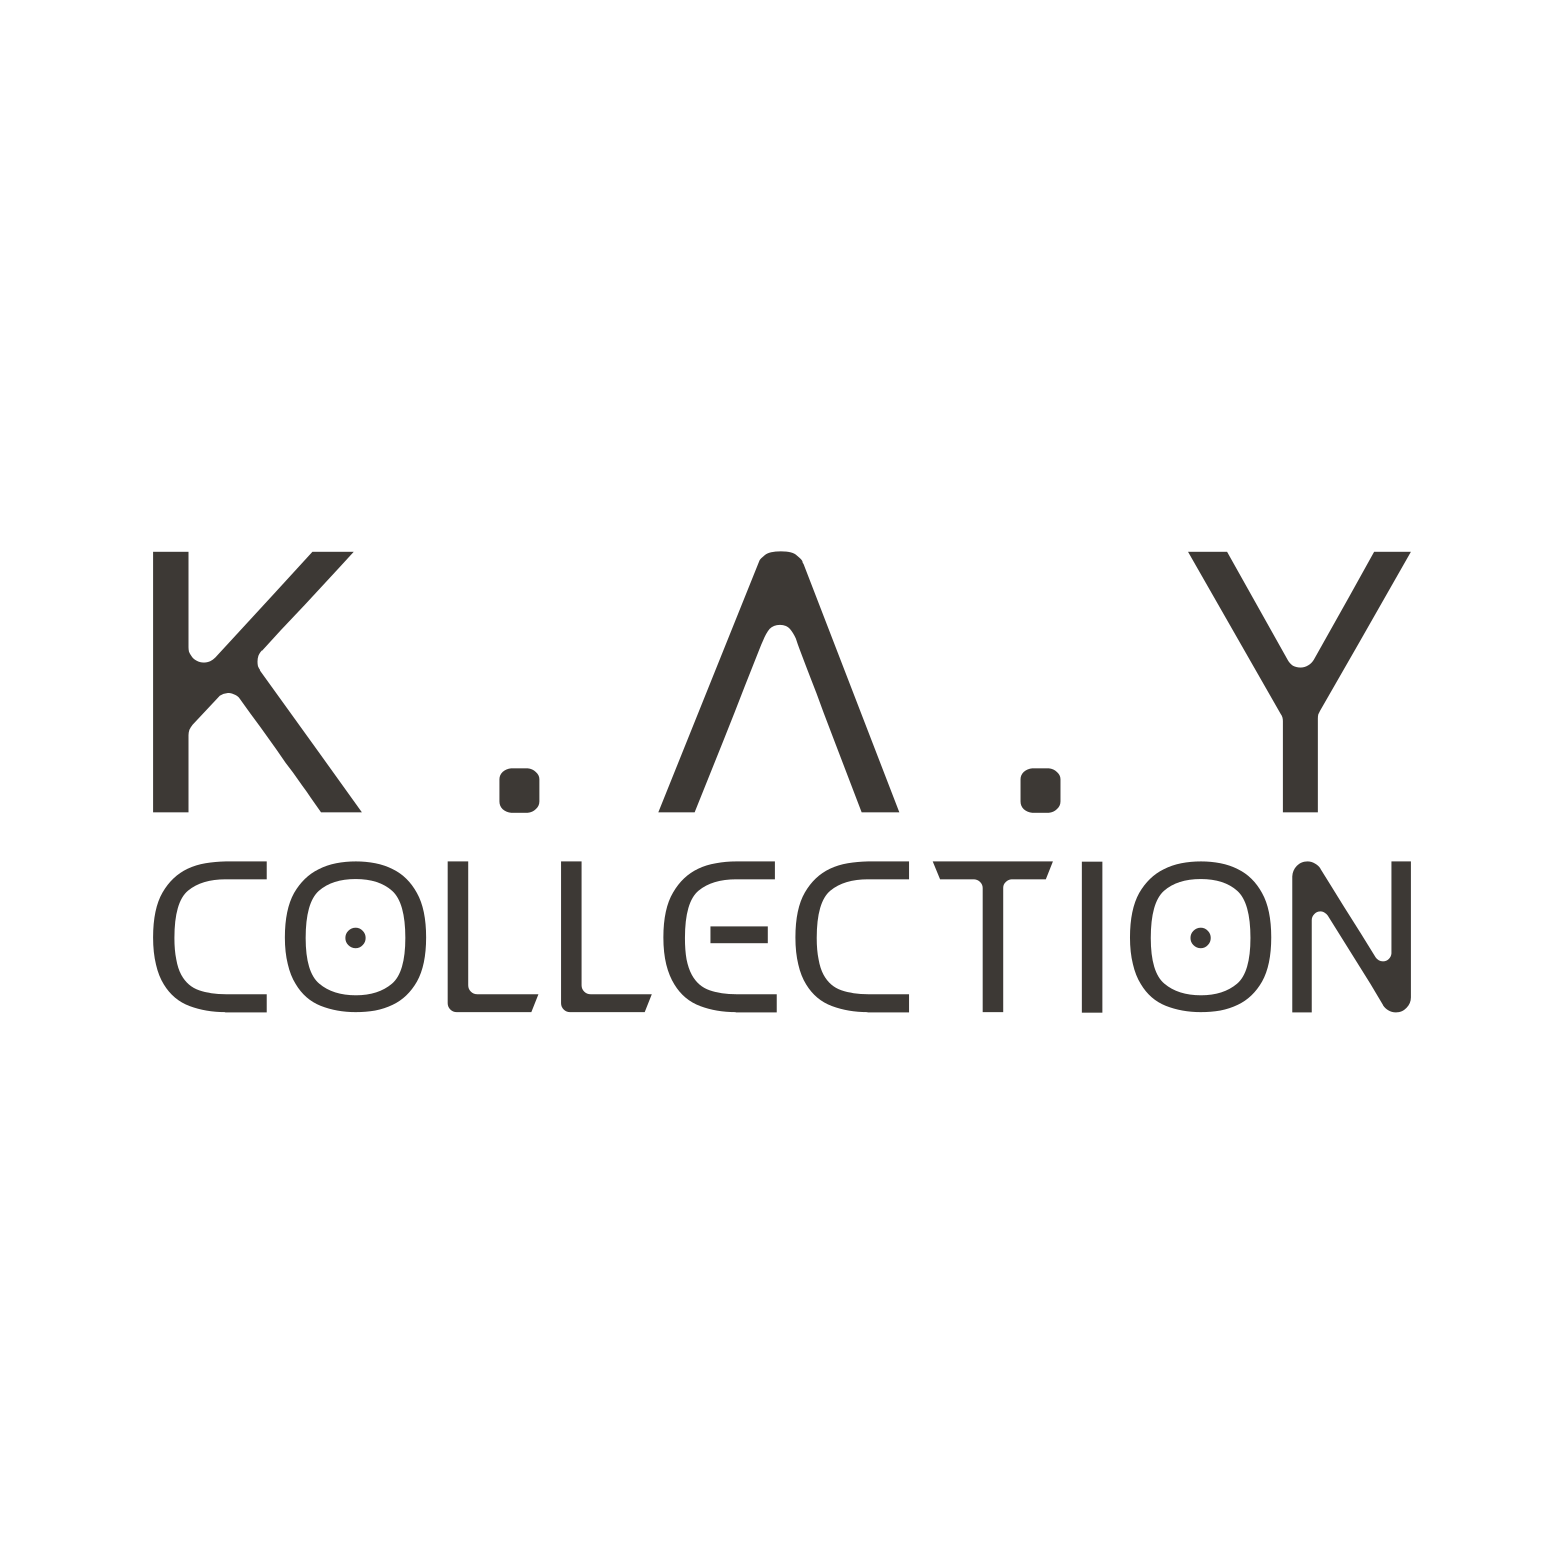 Kay Kollections